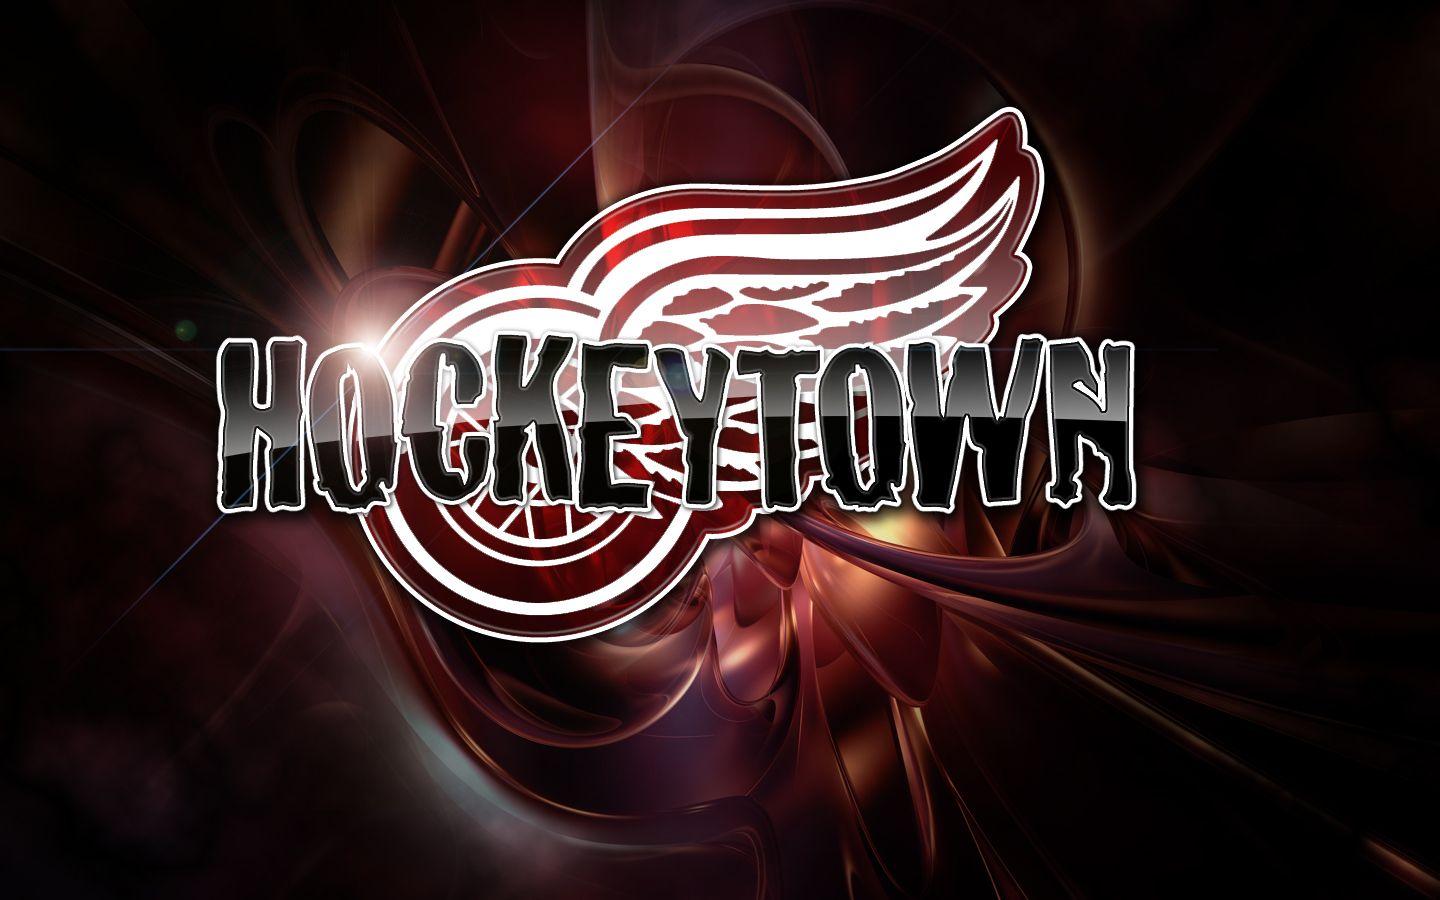 Detroit Red Wings Hockeytown Logo - Hockeytown Wallpaper. Hockeytown Wallpaper